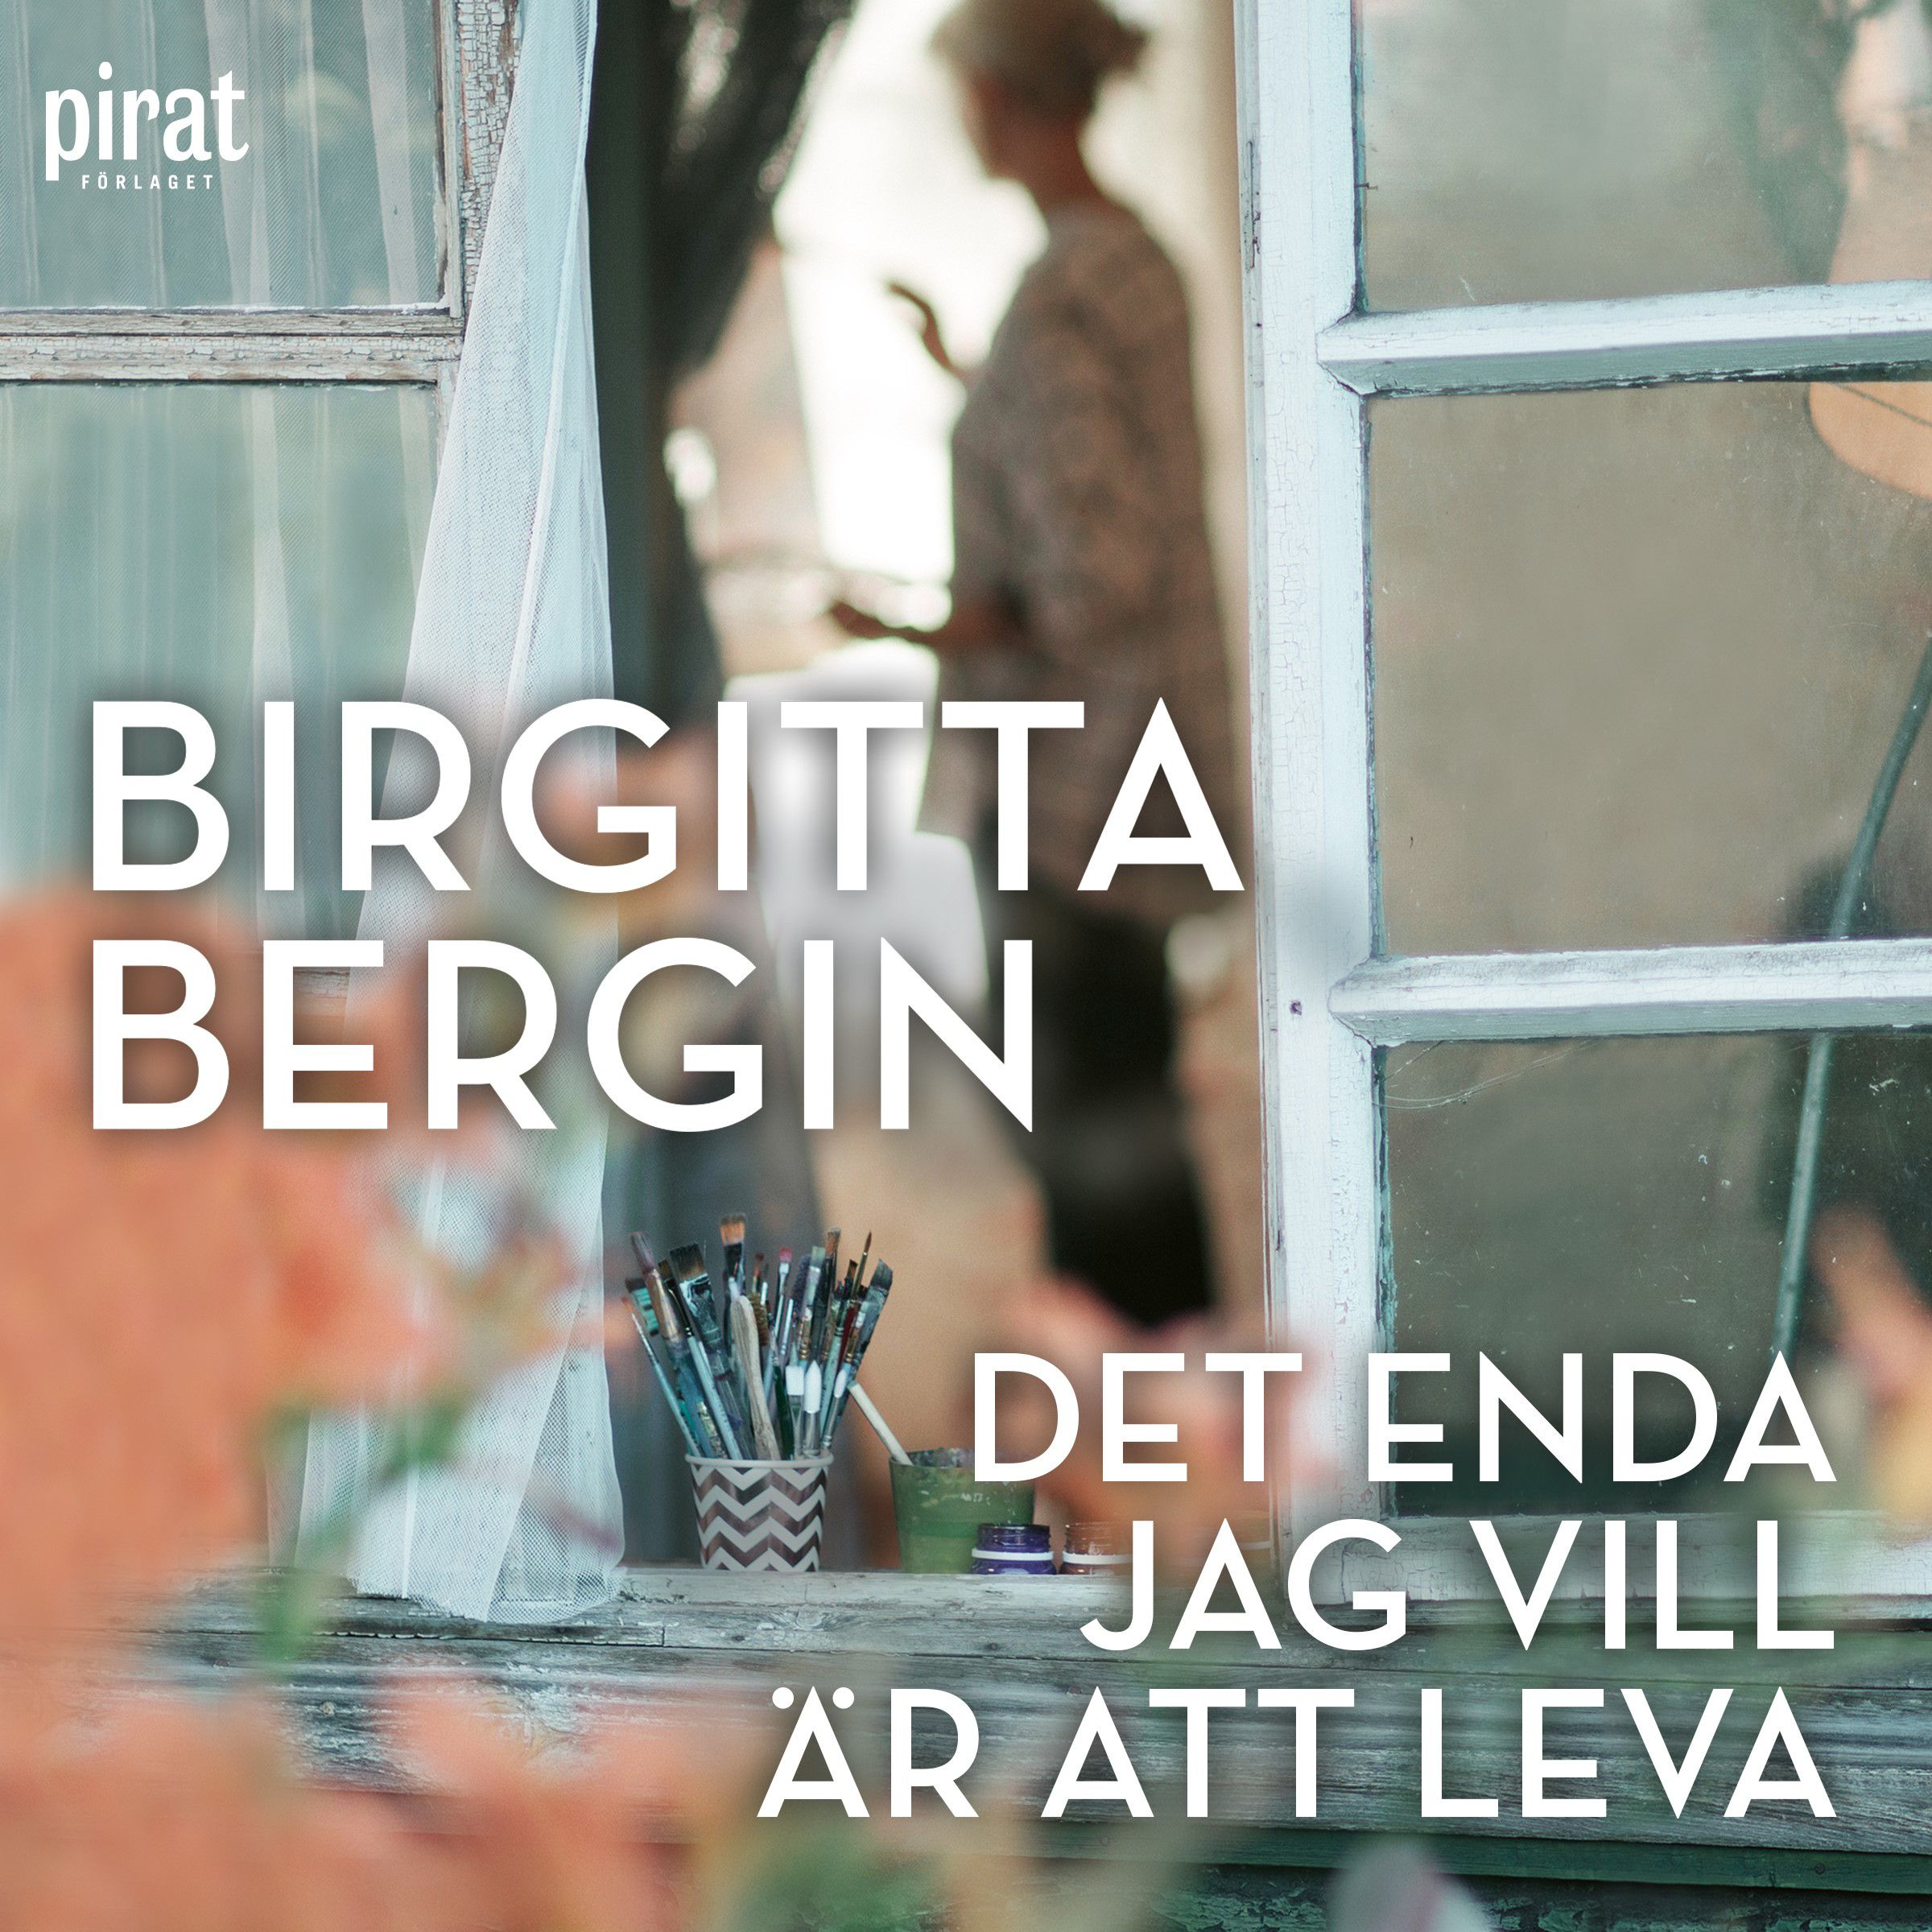 Det enda jag vill är att leva, audiobook by Birgitta Bergin